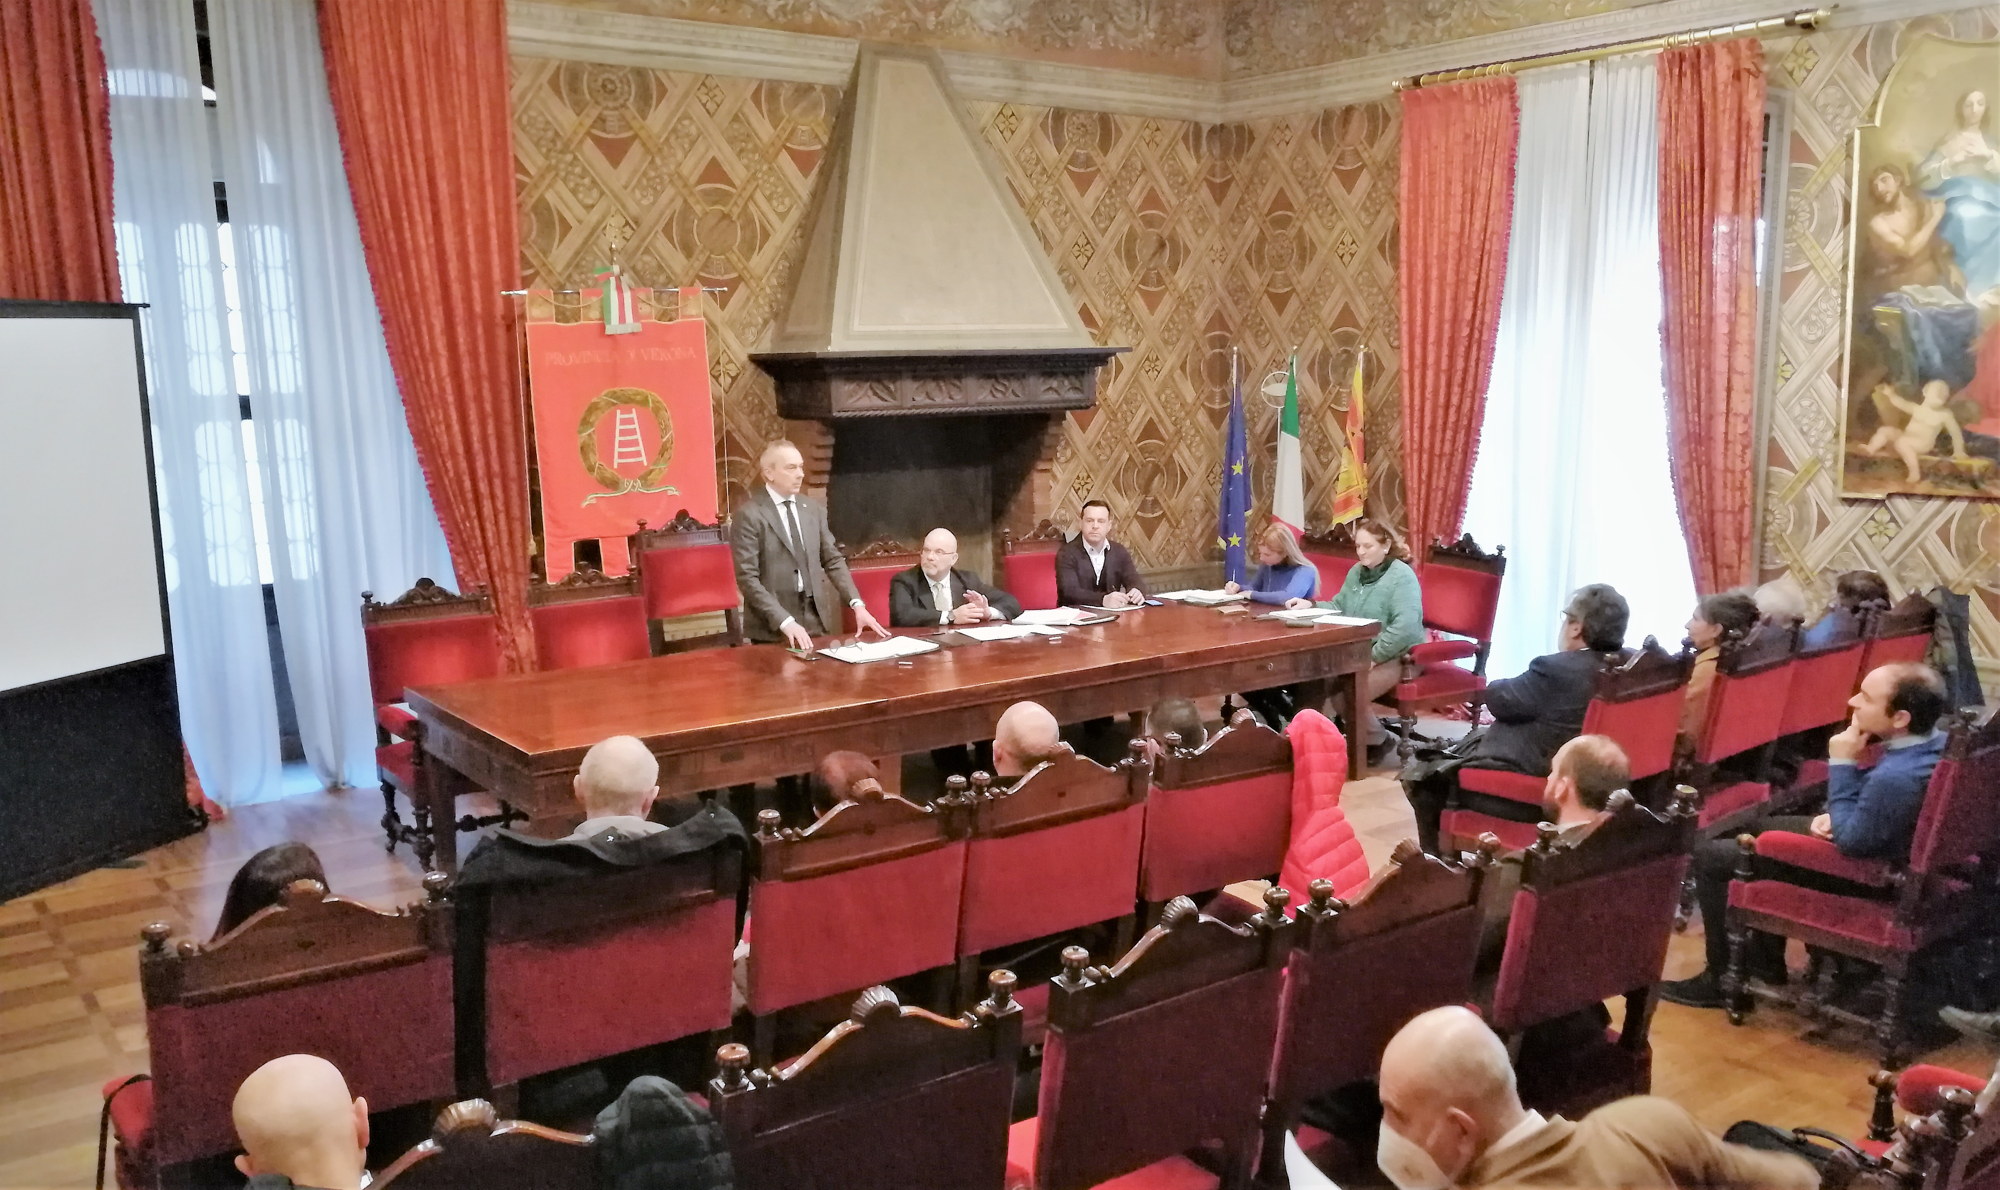 Provincia, ecco le nuove deleghe. A Luca Trentini (sindaco Nogarole Rocca) il rapporto con A22 ed enti economici